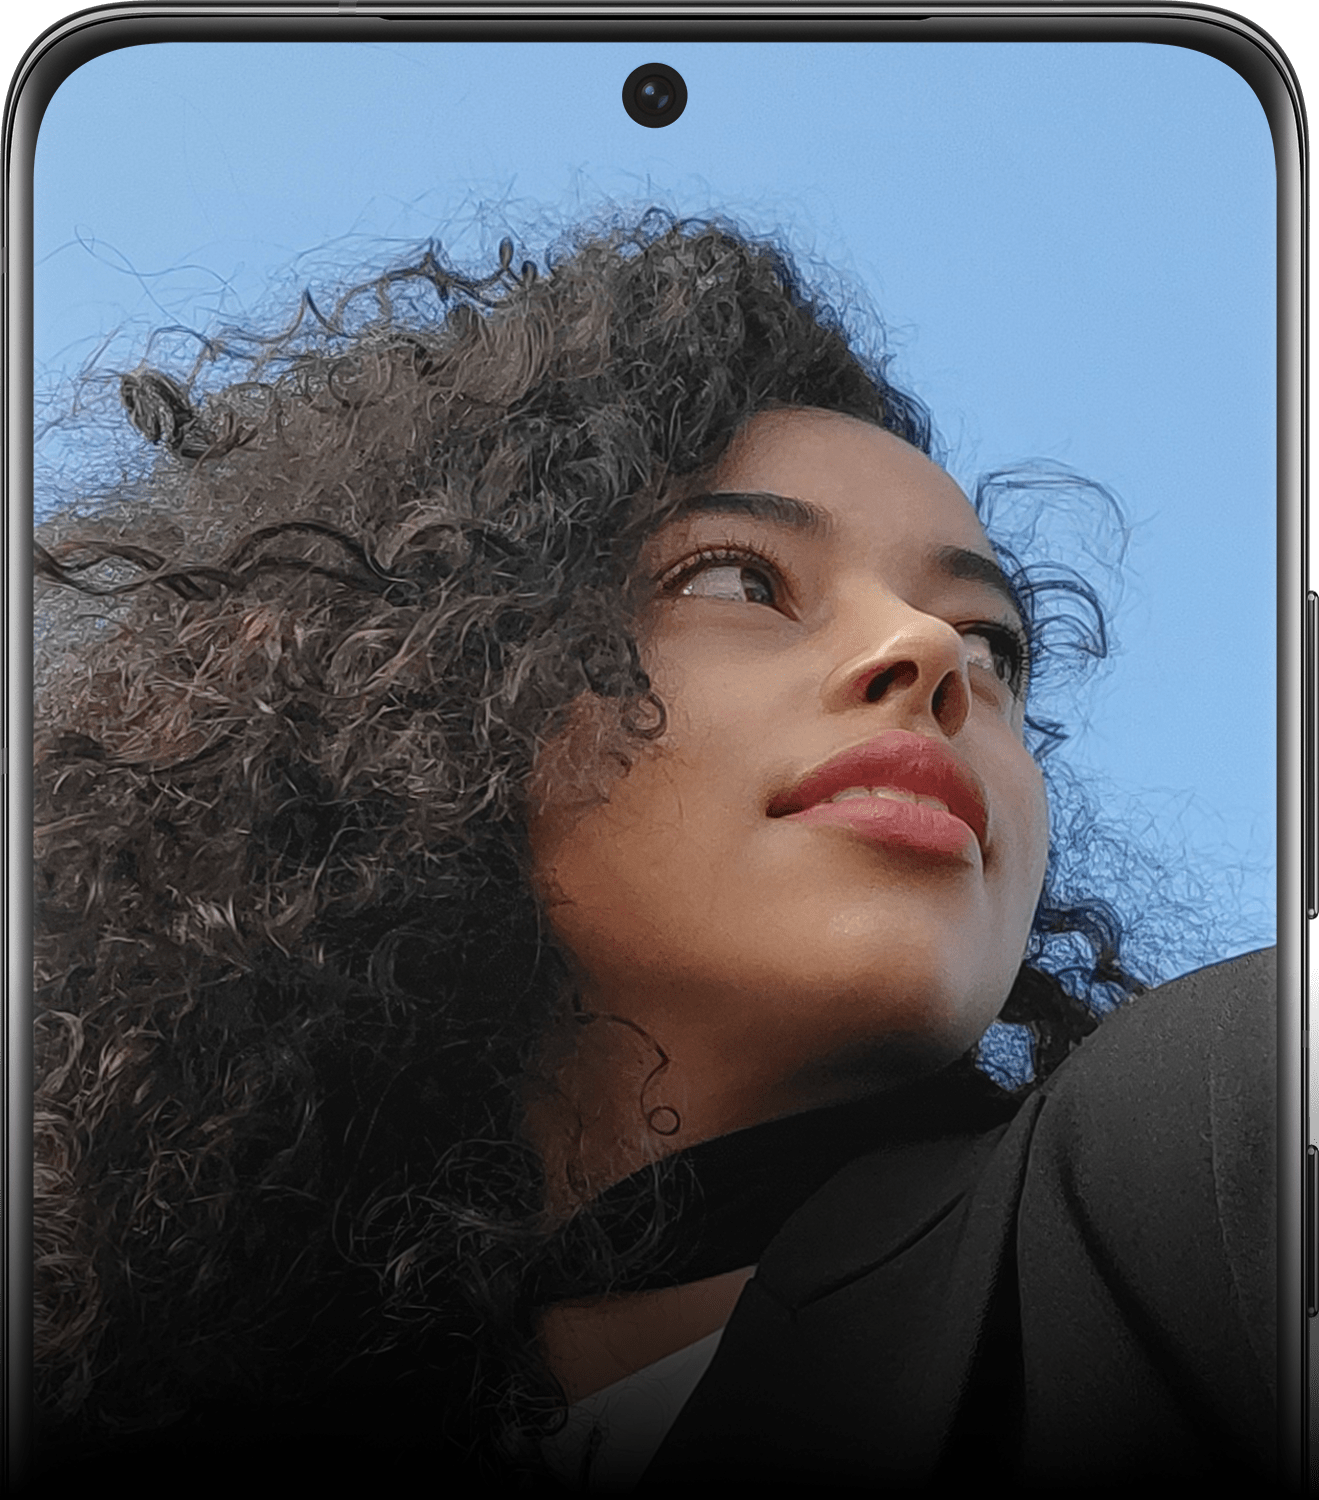 عرض النصف العلوي لهاتف Galaxy S21 Ultra 5G كما تراه من الأمام، مع ظهور صورة امرأة على الشاشة وشرح لكاميرا السيلفي.